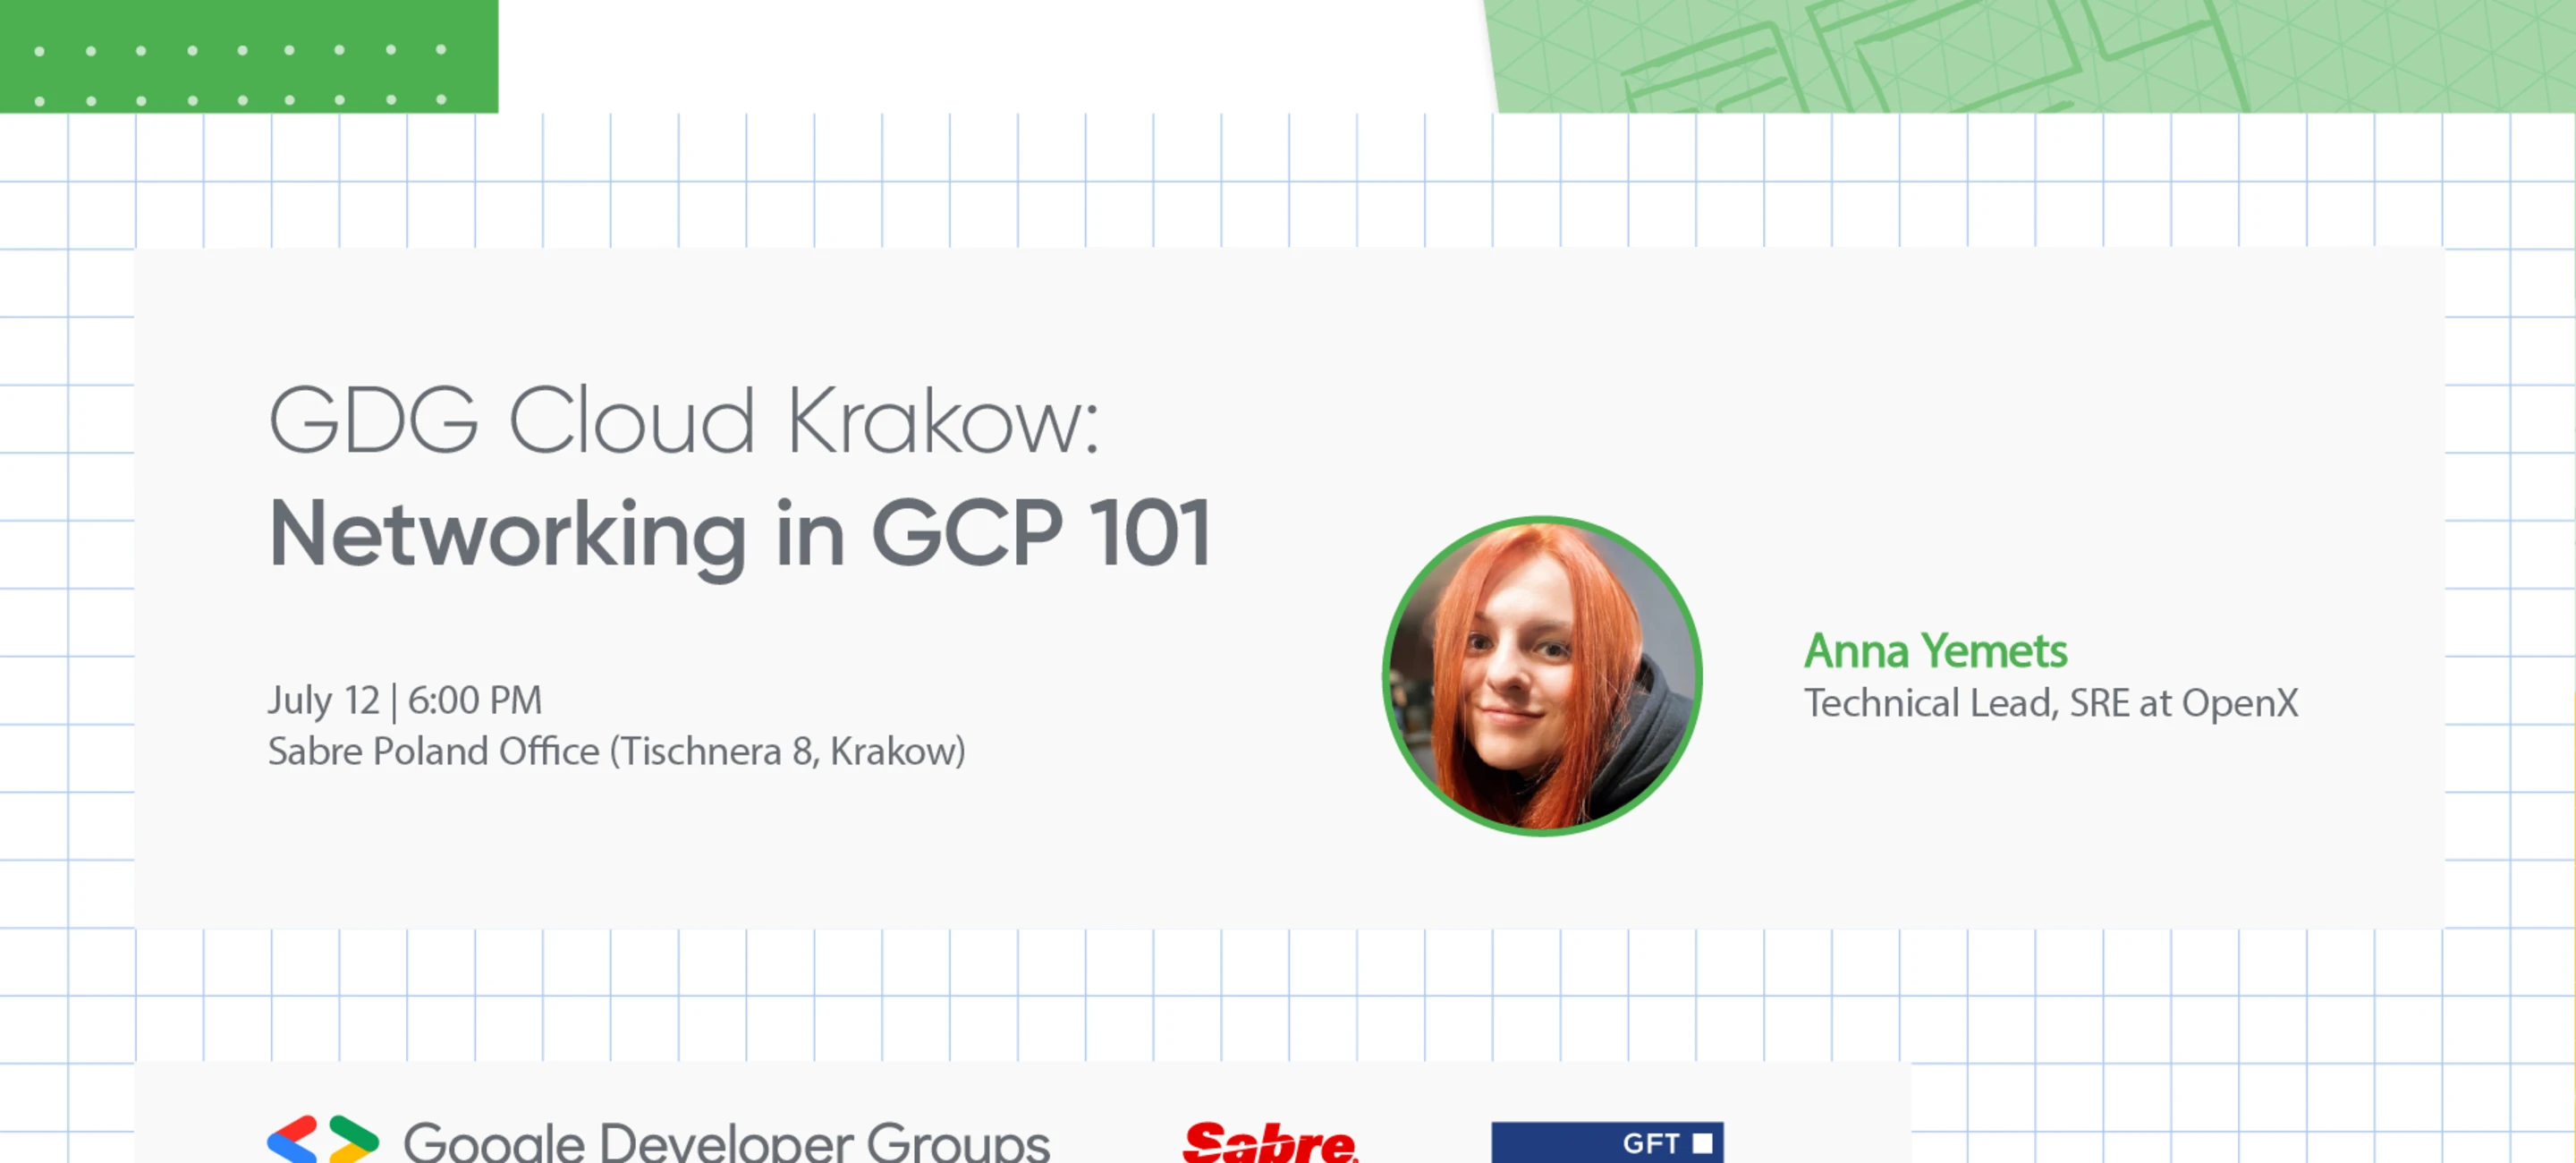 gdg-cloud-krakow-networking-in-gcp-101